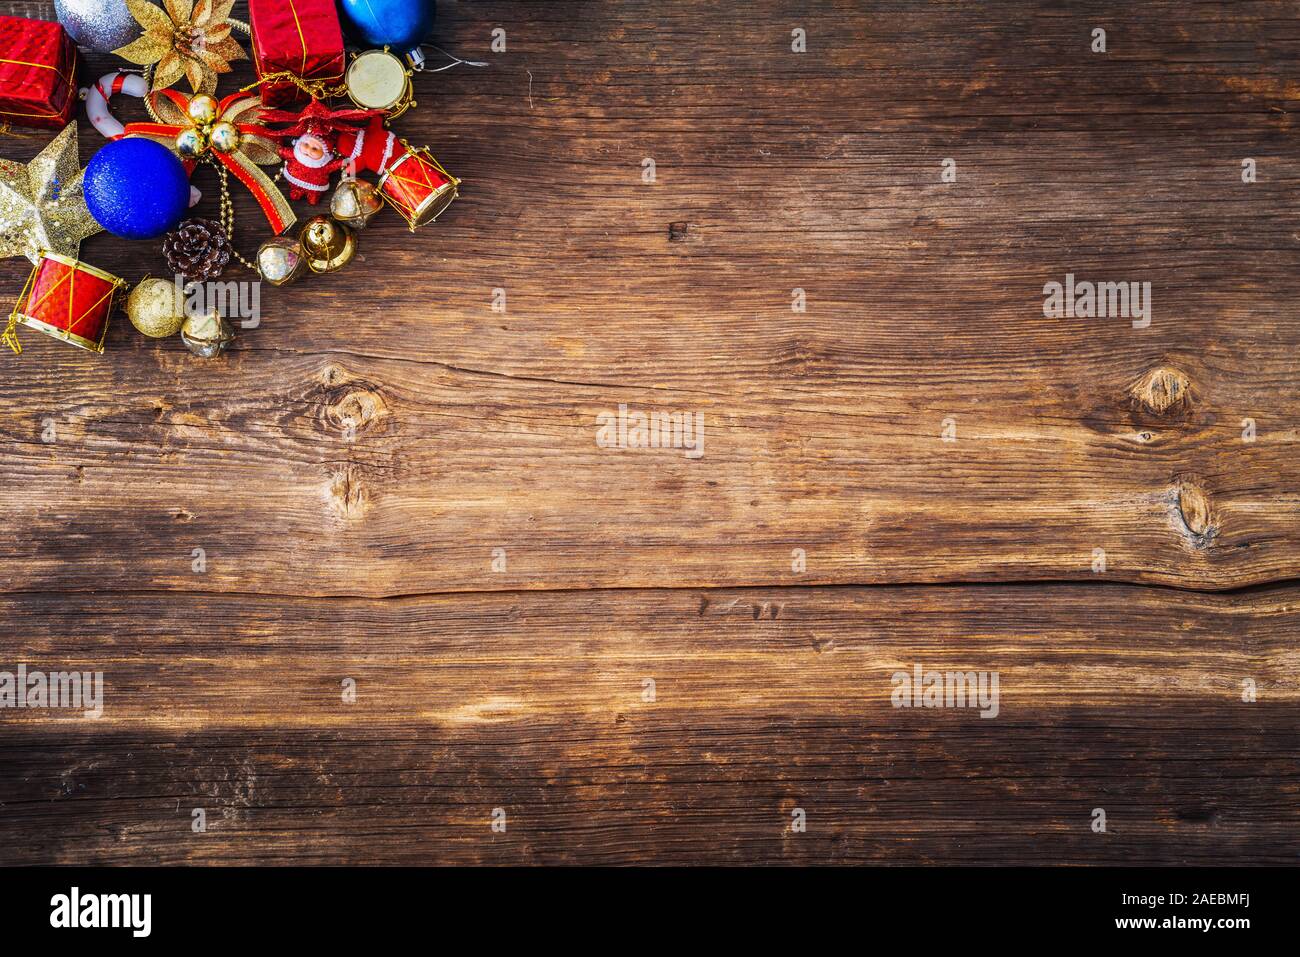 Ornements de Noël concept avec fond de bois. Nouveau concept de l'année. Banque D'Images